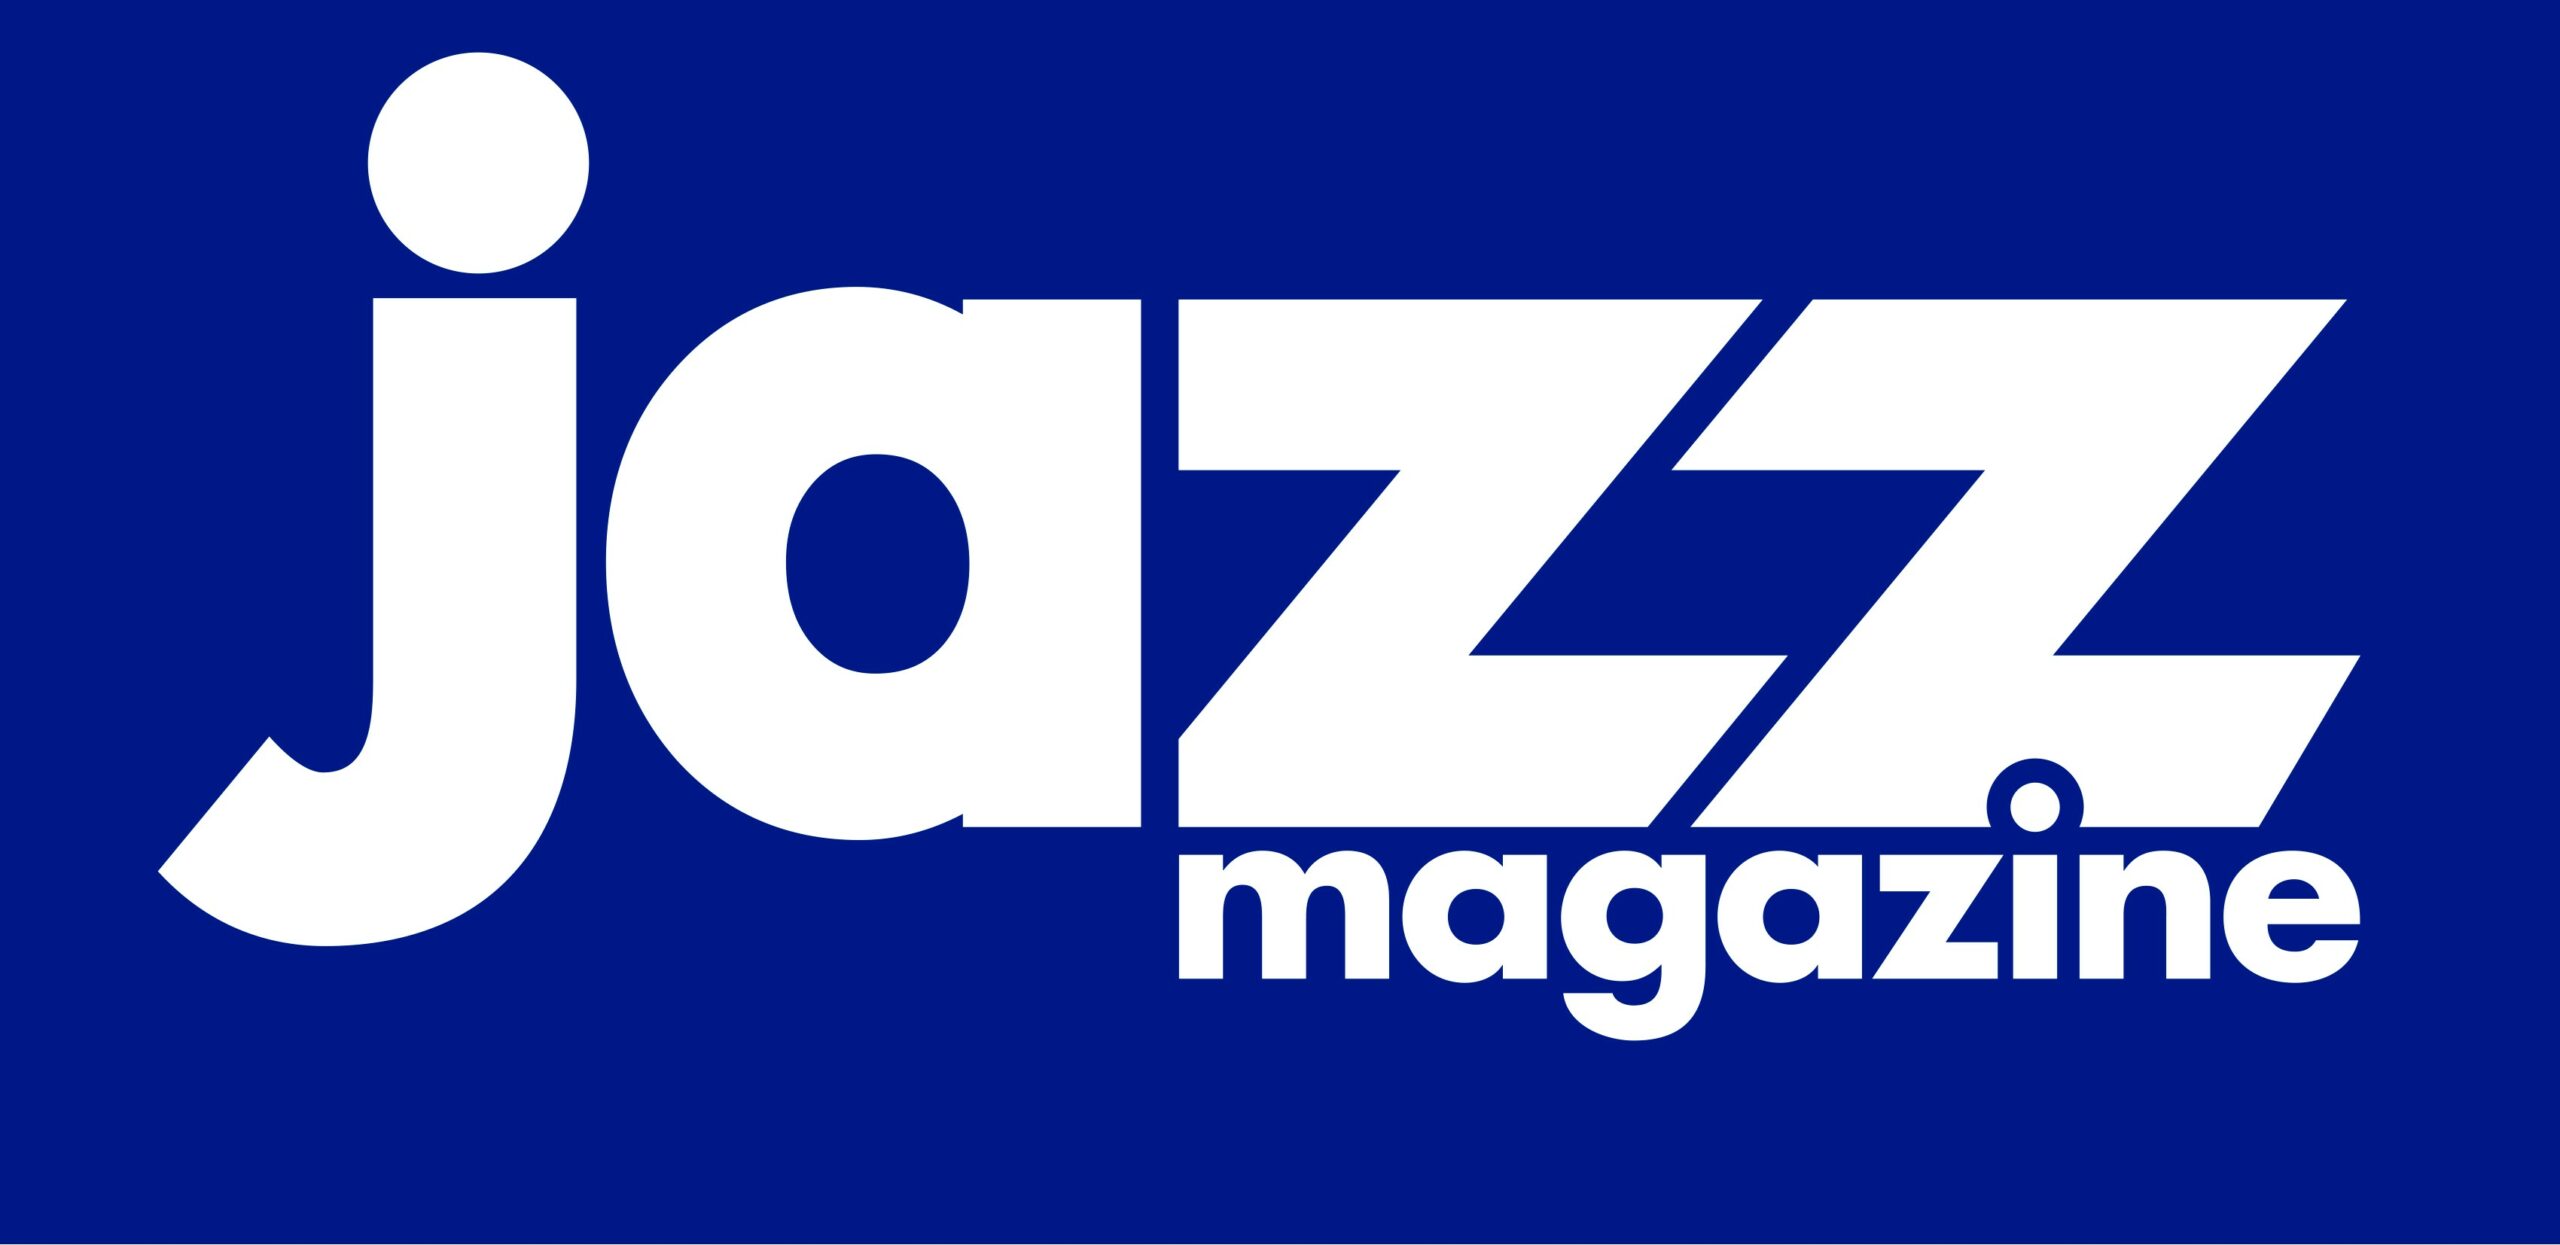 https://www.jazzmagazine.com/